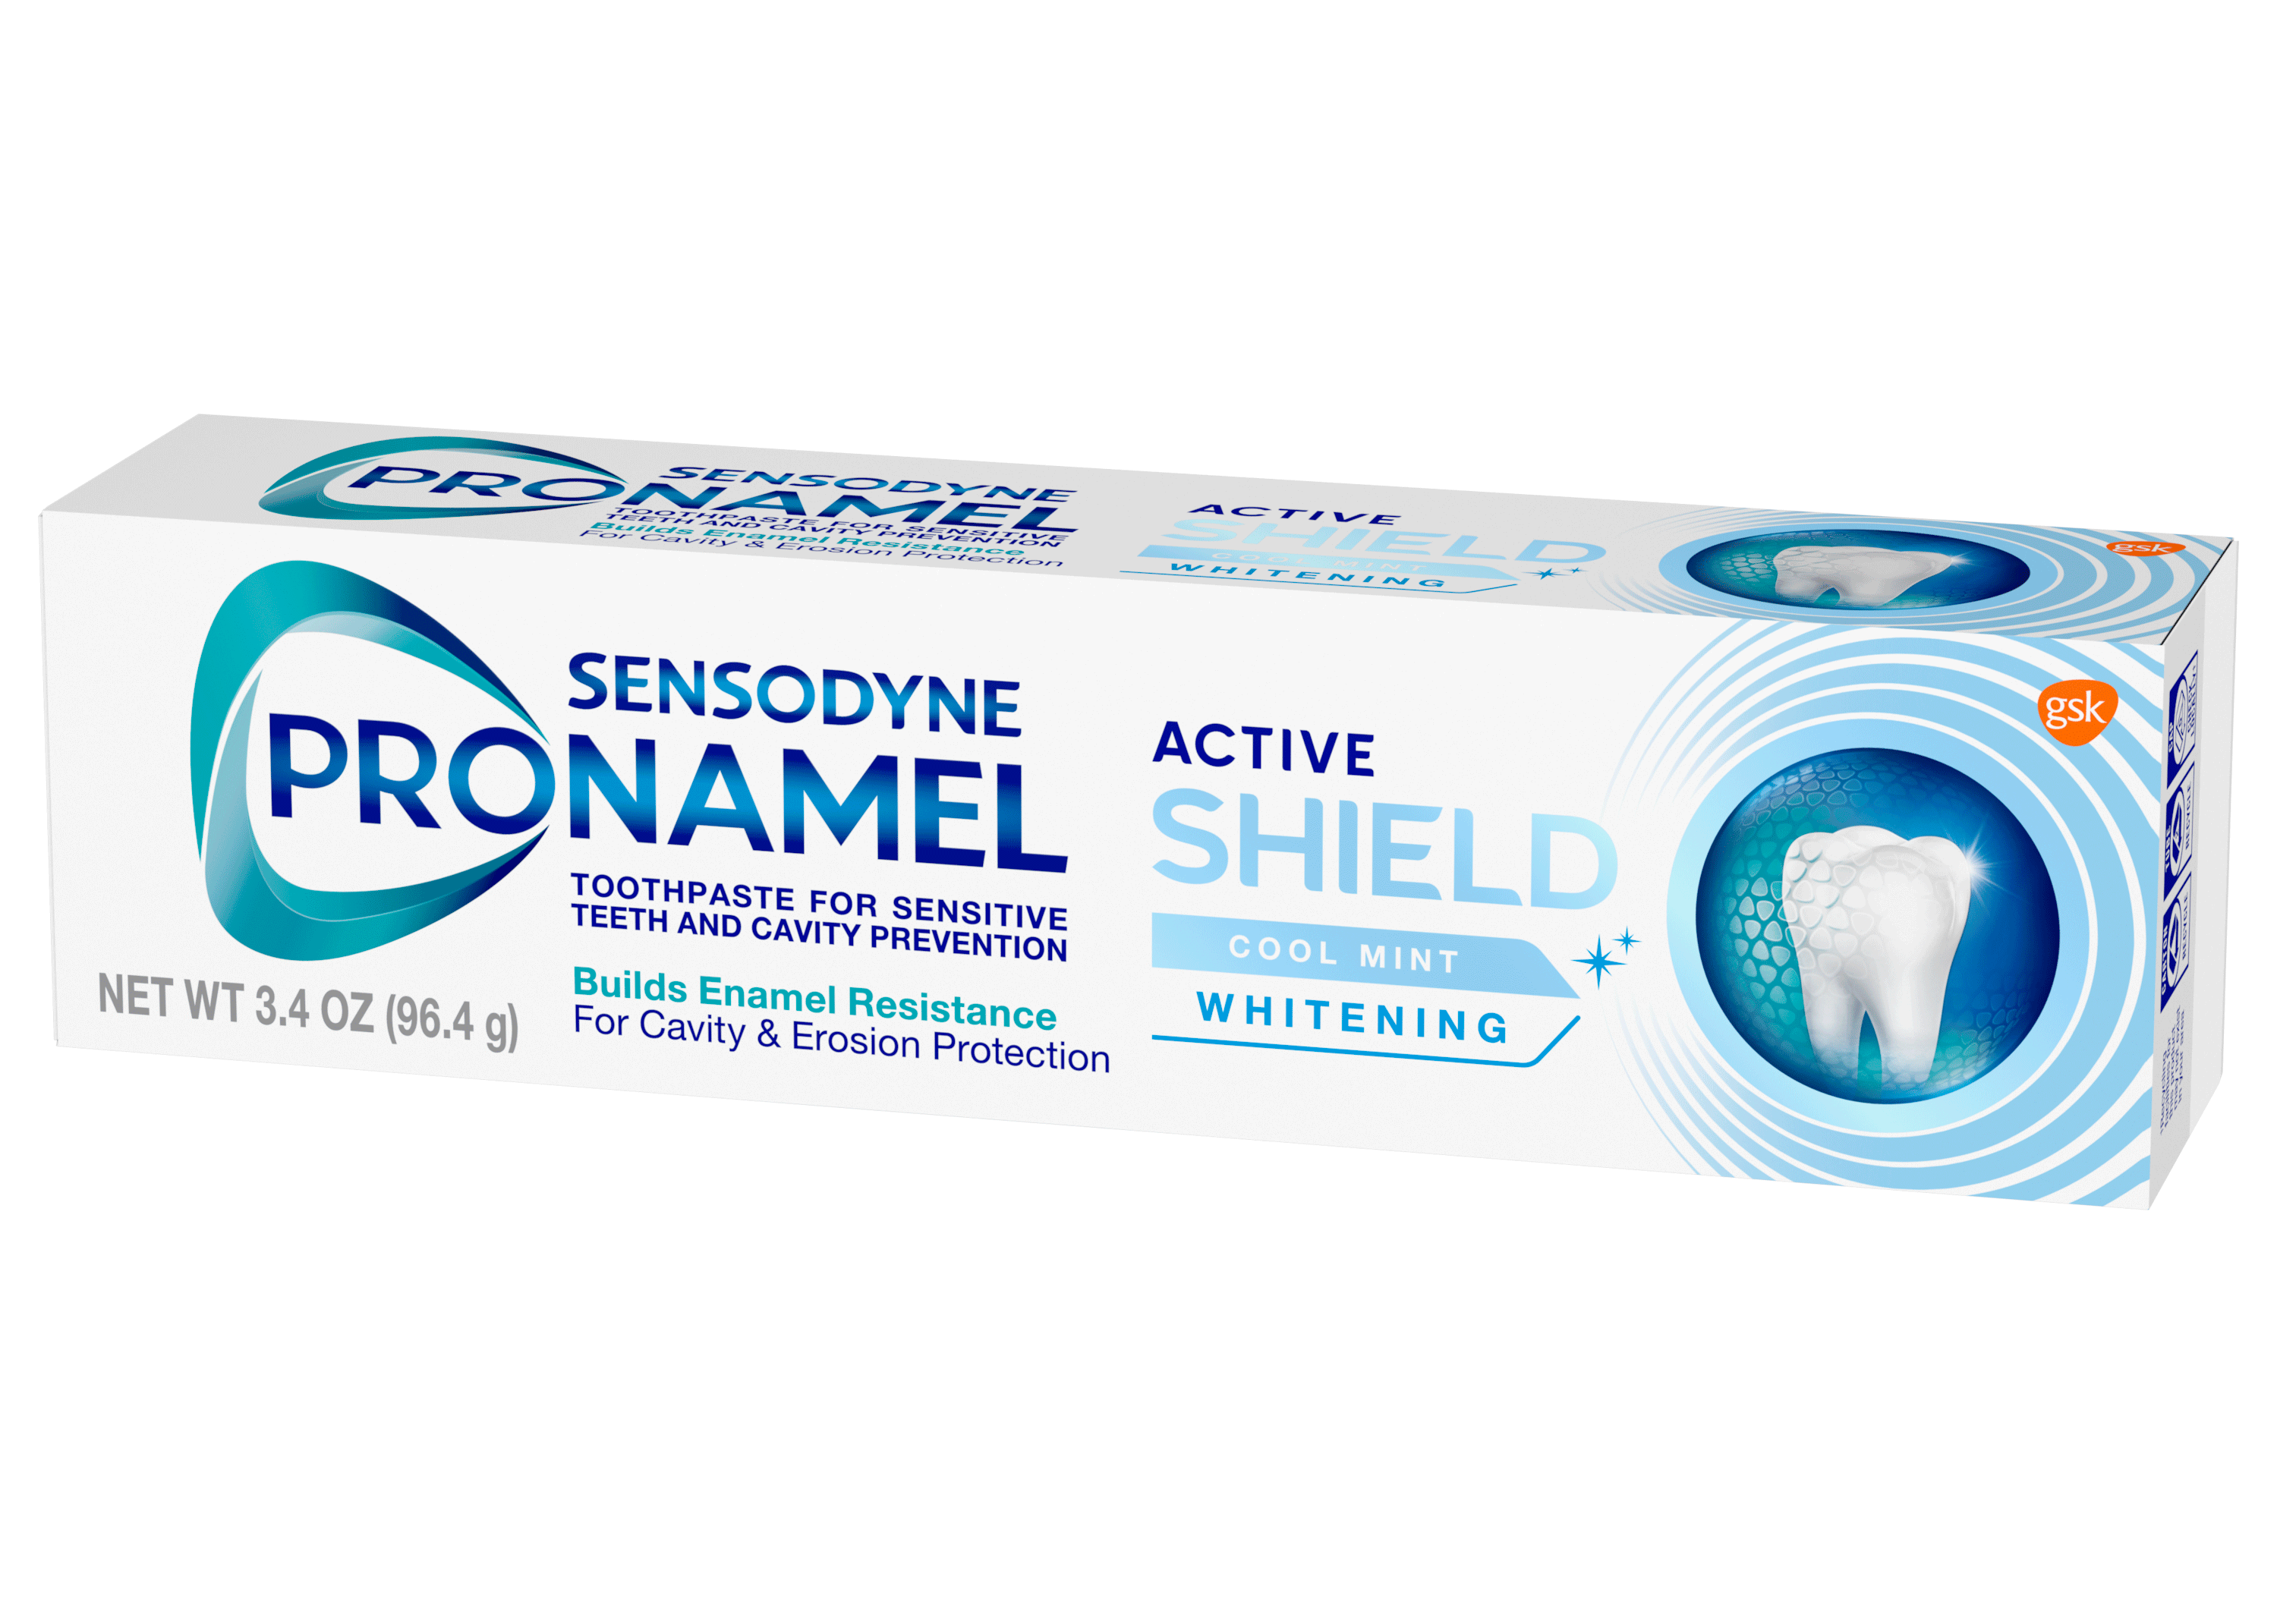 Box of Sensodyne Pronamel Active Shield Whitening Toothpaste